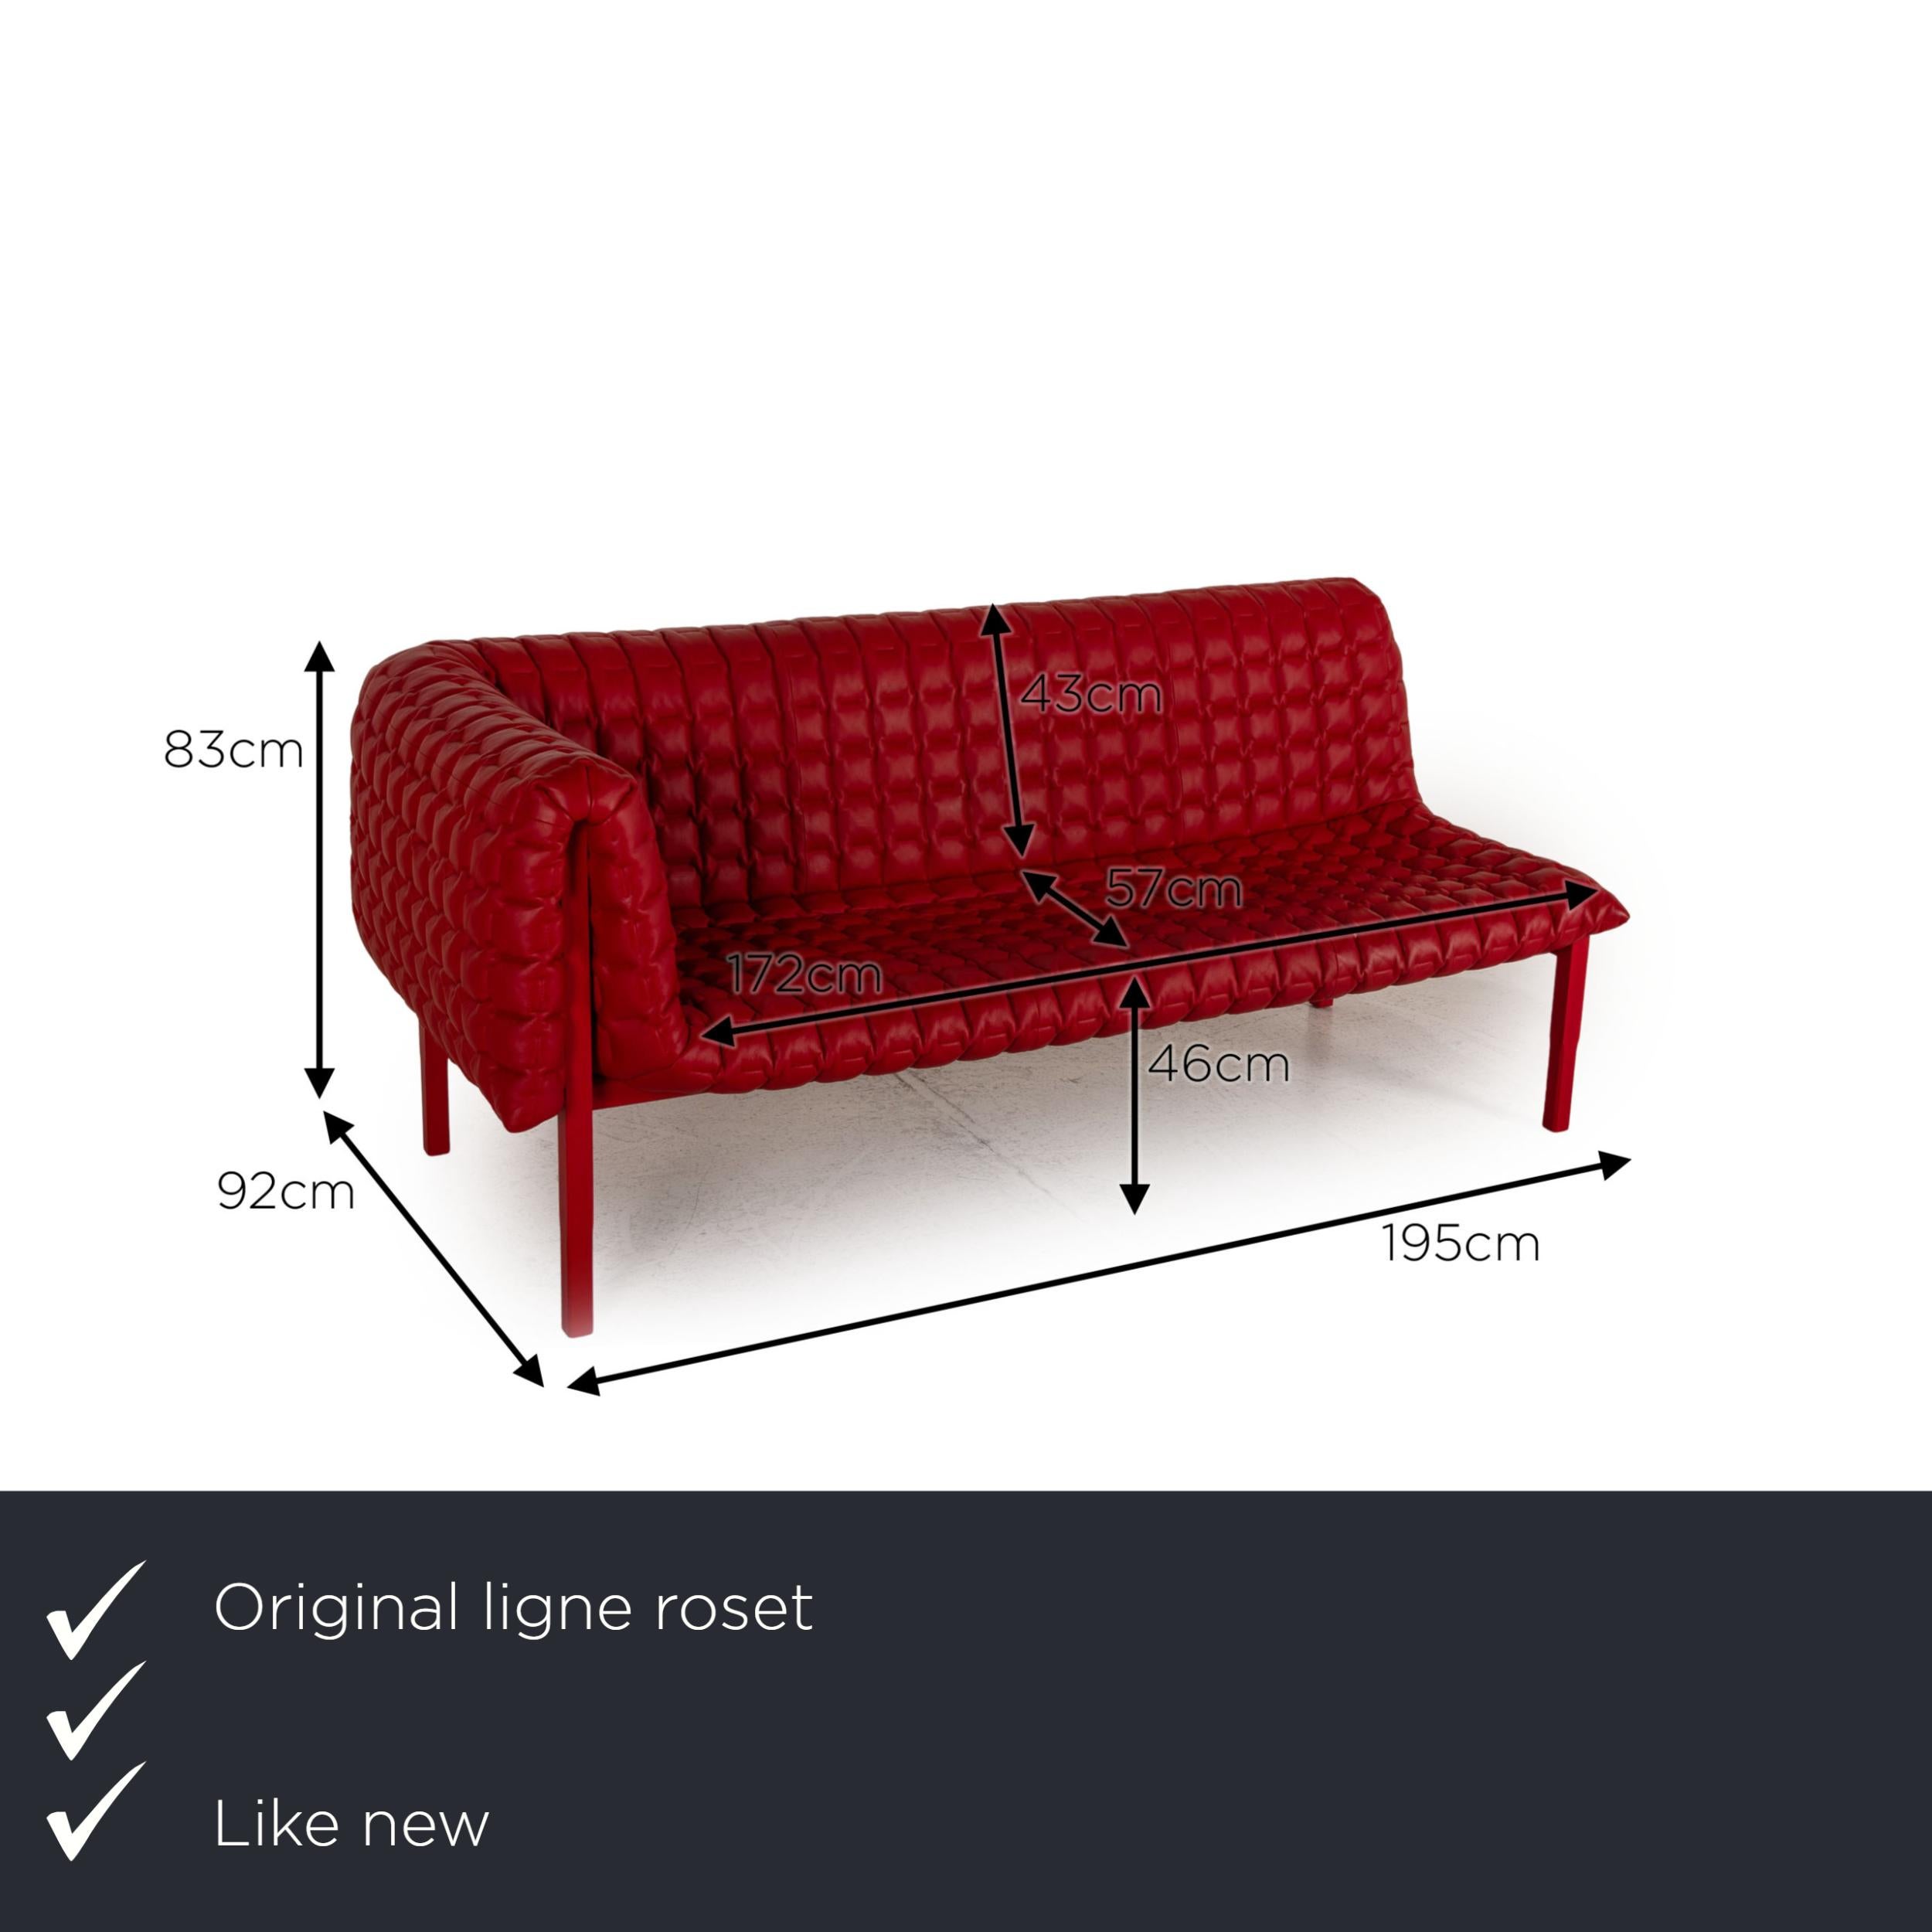 Wir präsentieren Ihnen eine ligne roset Ruché Lederliege rot Sofa Couch Meridienne chaise longue.
 

 Produktabmessungen in Zentimetern:
 

Tiefe: 92
Breite: 195
Höhe: 83
Sitzhöhe: 46
Resthöhe: 81
Sitztiefe: 57
Sitzbreite: